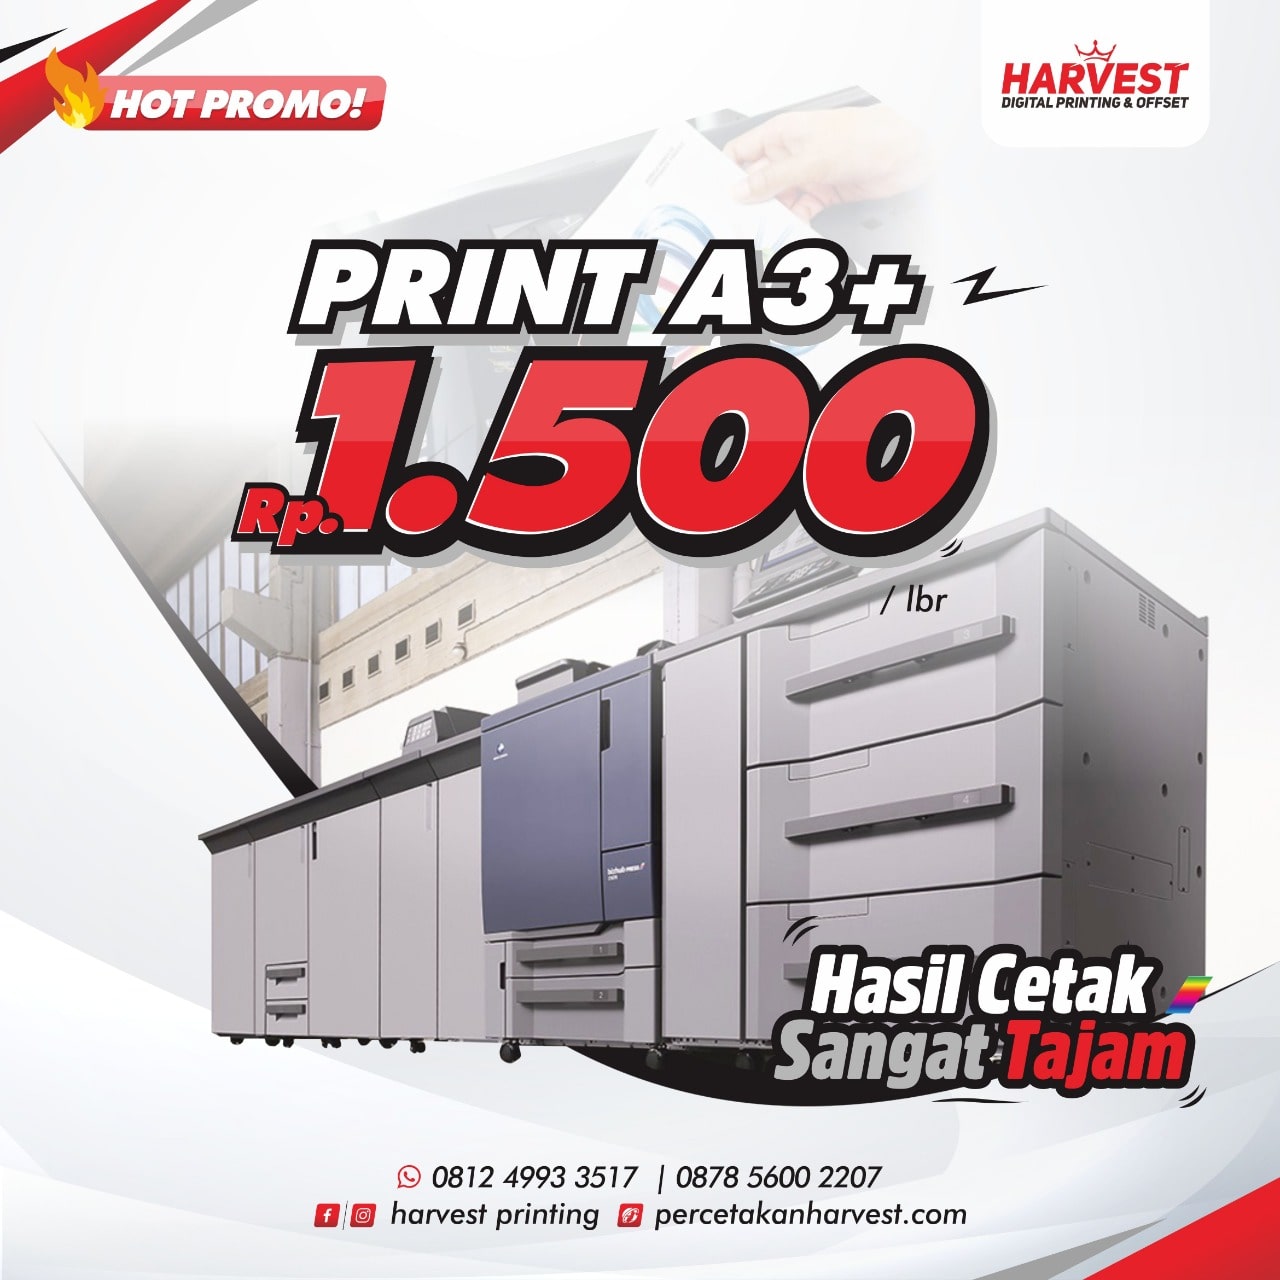 Percetakan Harvest Printing Surabaya